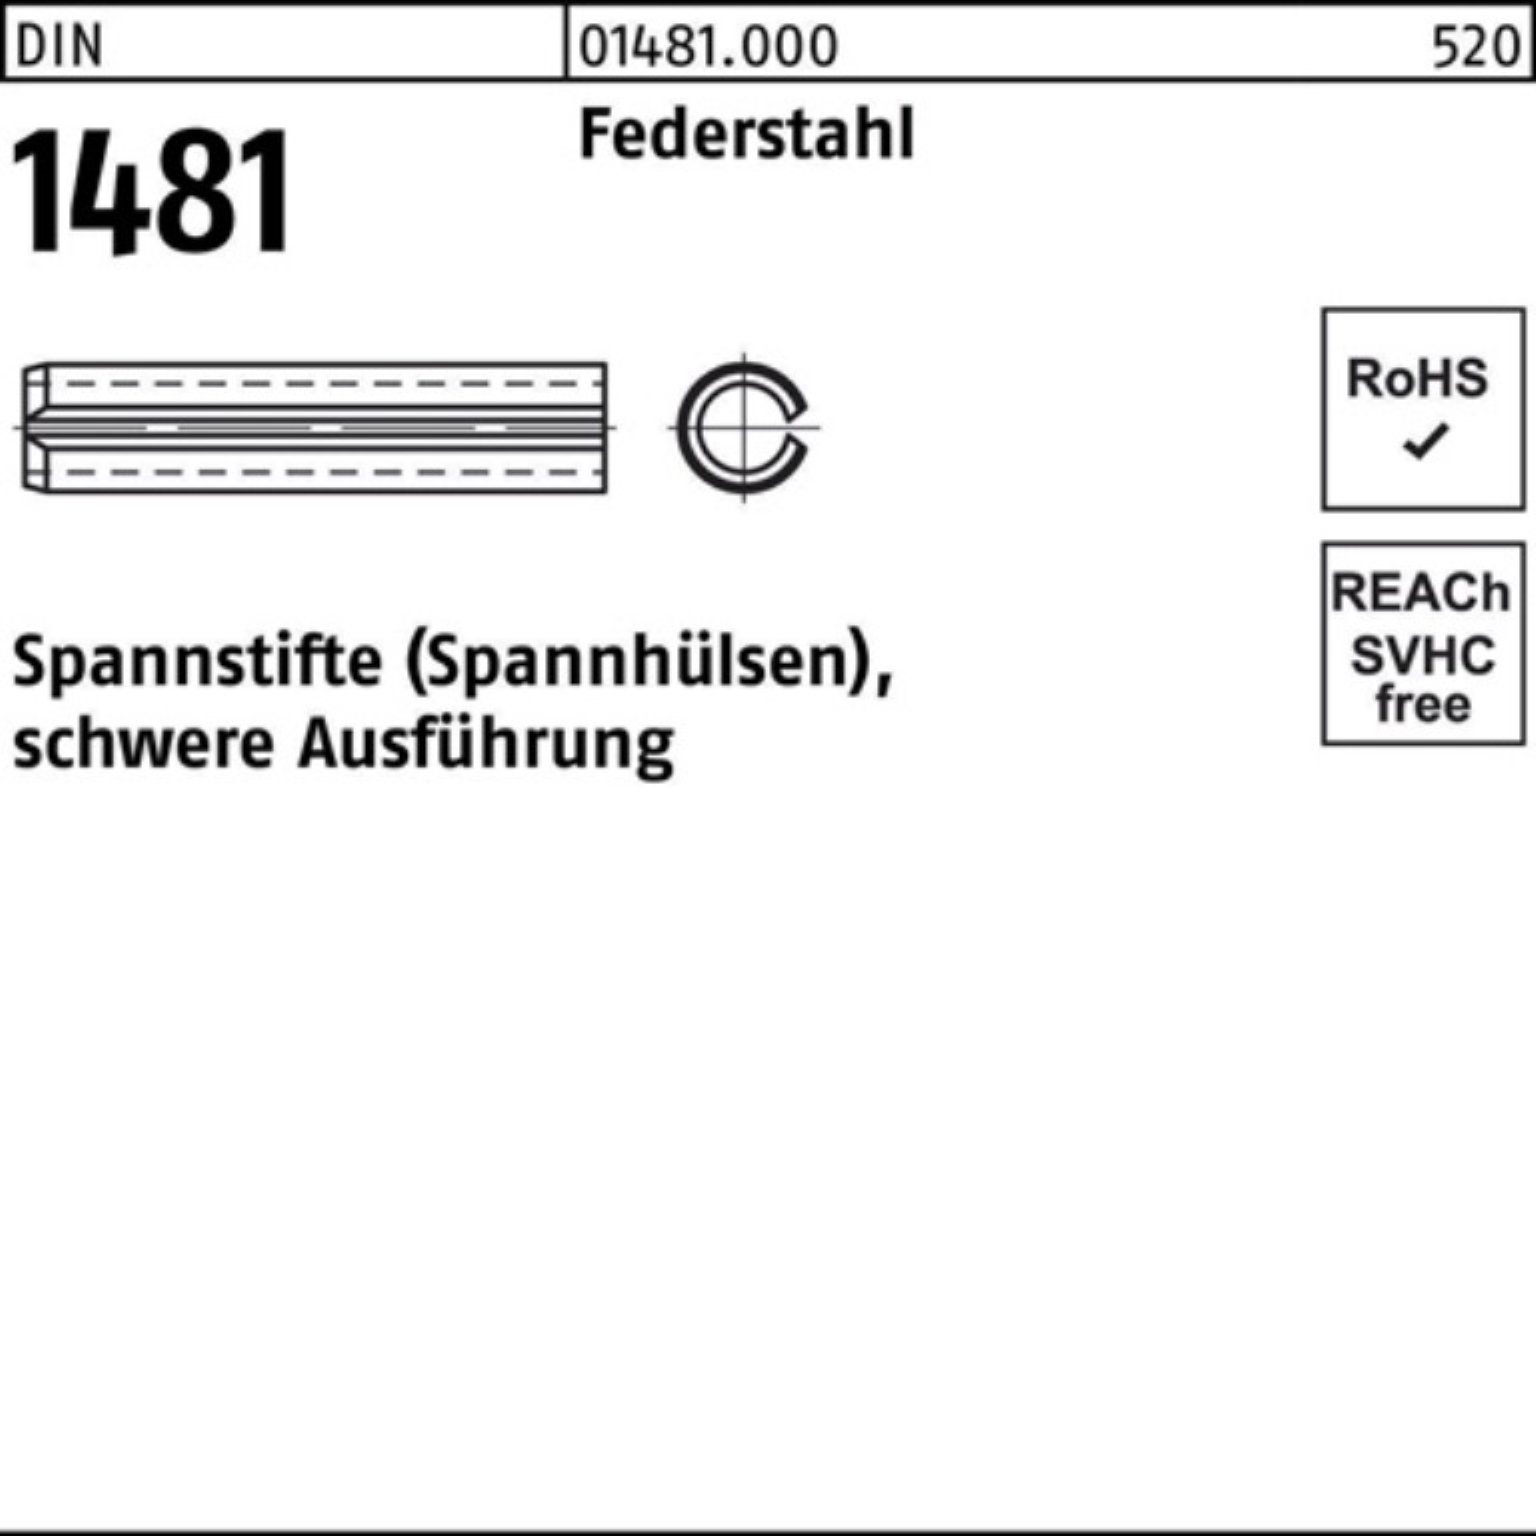 Reyher Spannstift 100er Pack Spannstift DIN 1481 10x 80 Federstahl schwere Ausführung 5